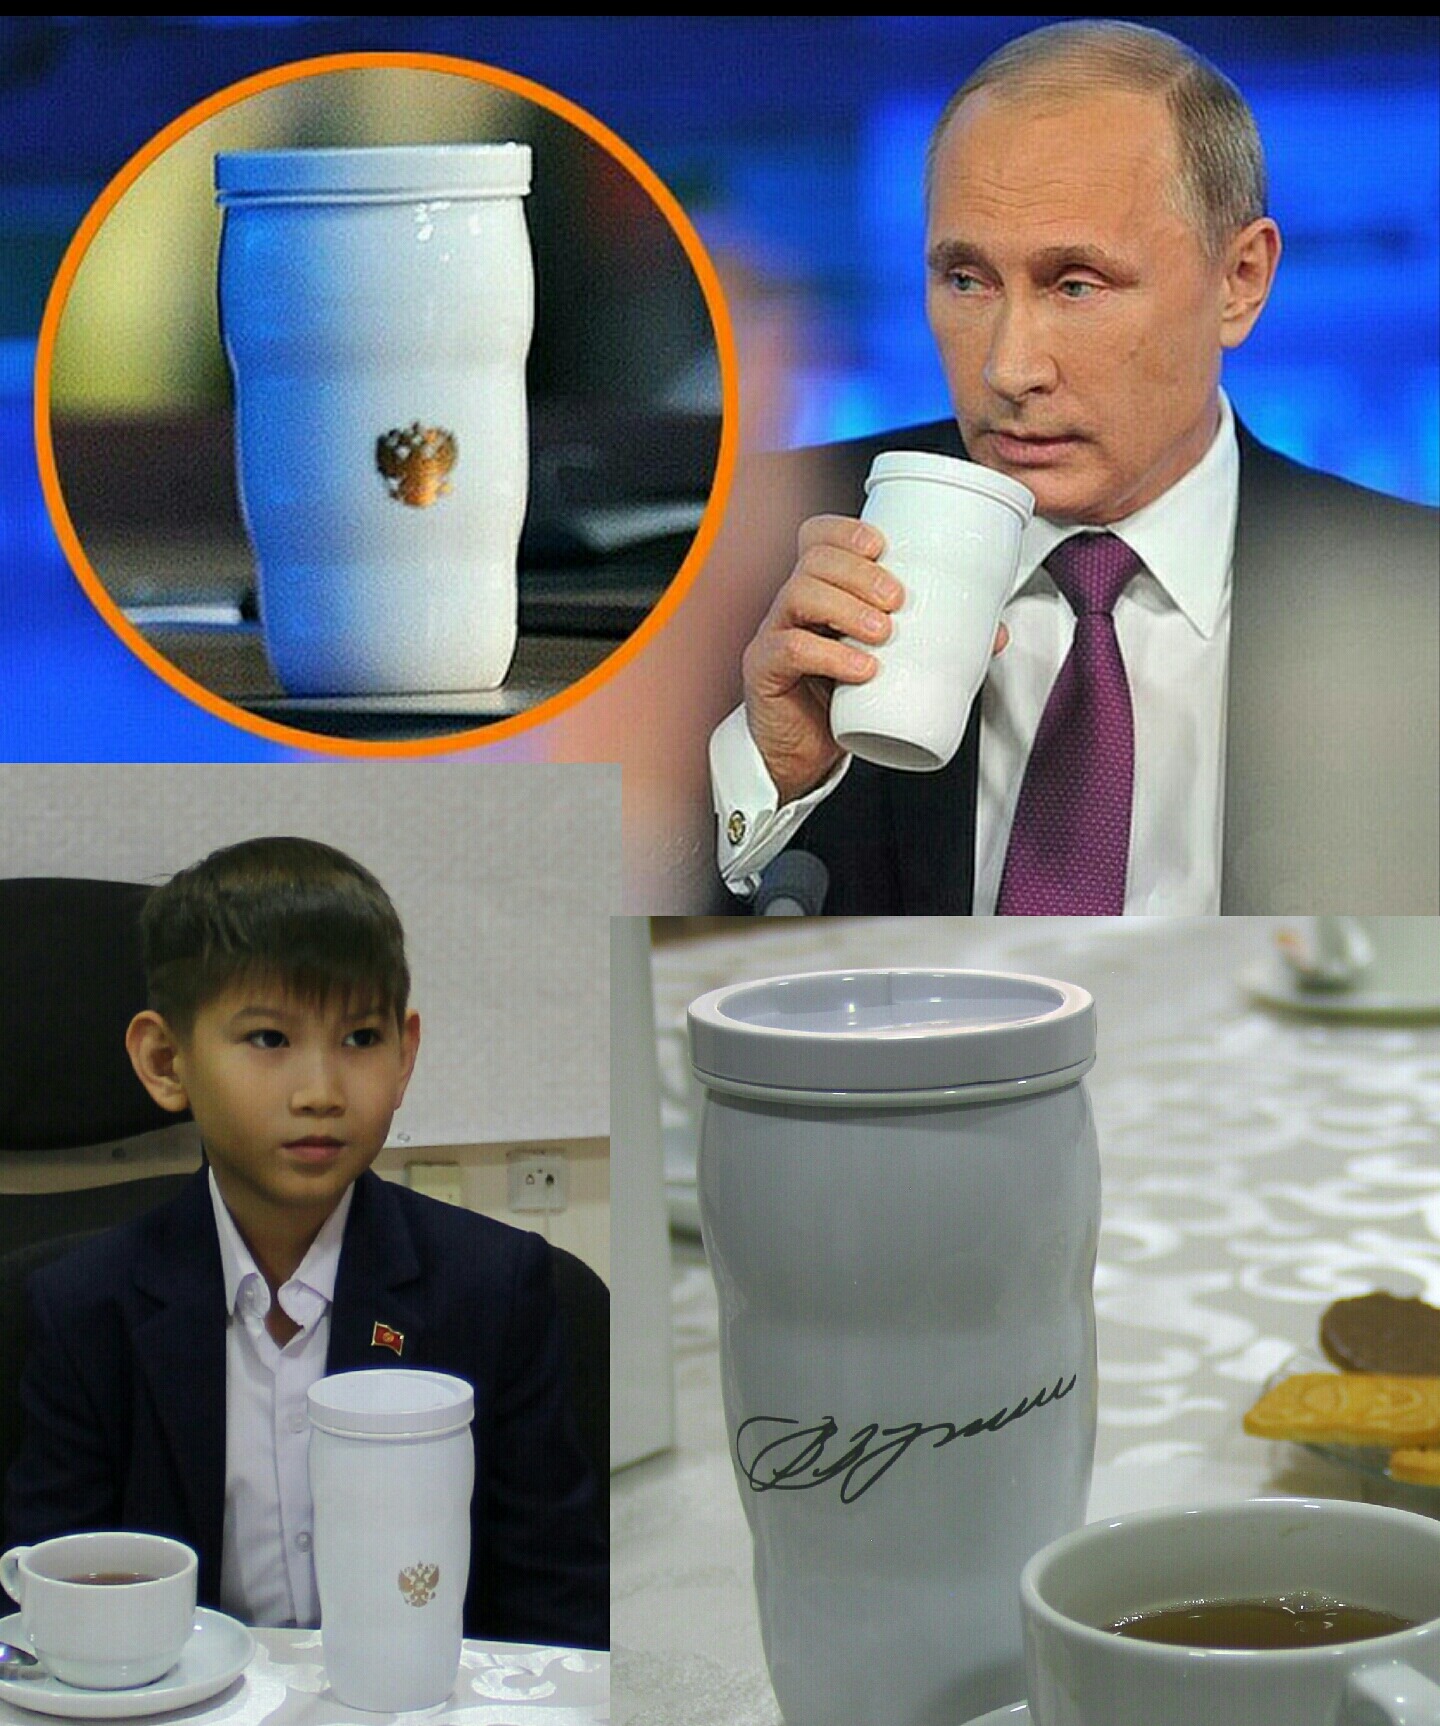 "Спасибо, Владимир Владимирович". Путин подарил свой портрет ребенку из Бишкека, просившему акции "Газпрома". Фото: Фейсбук